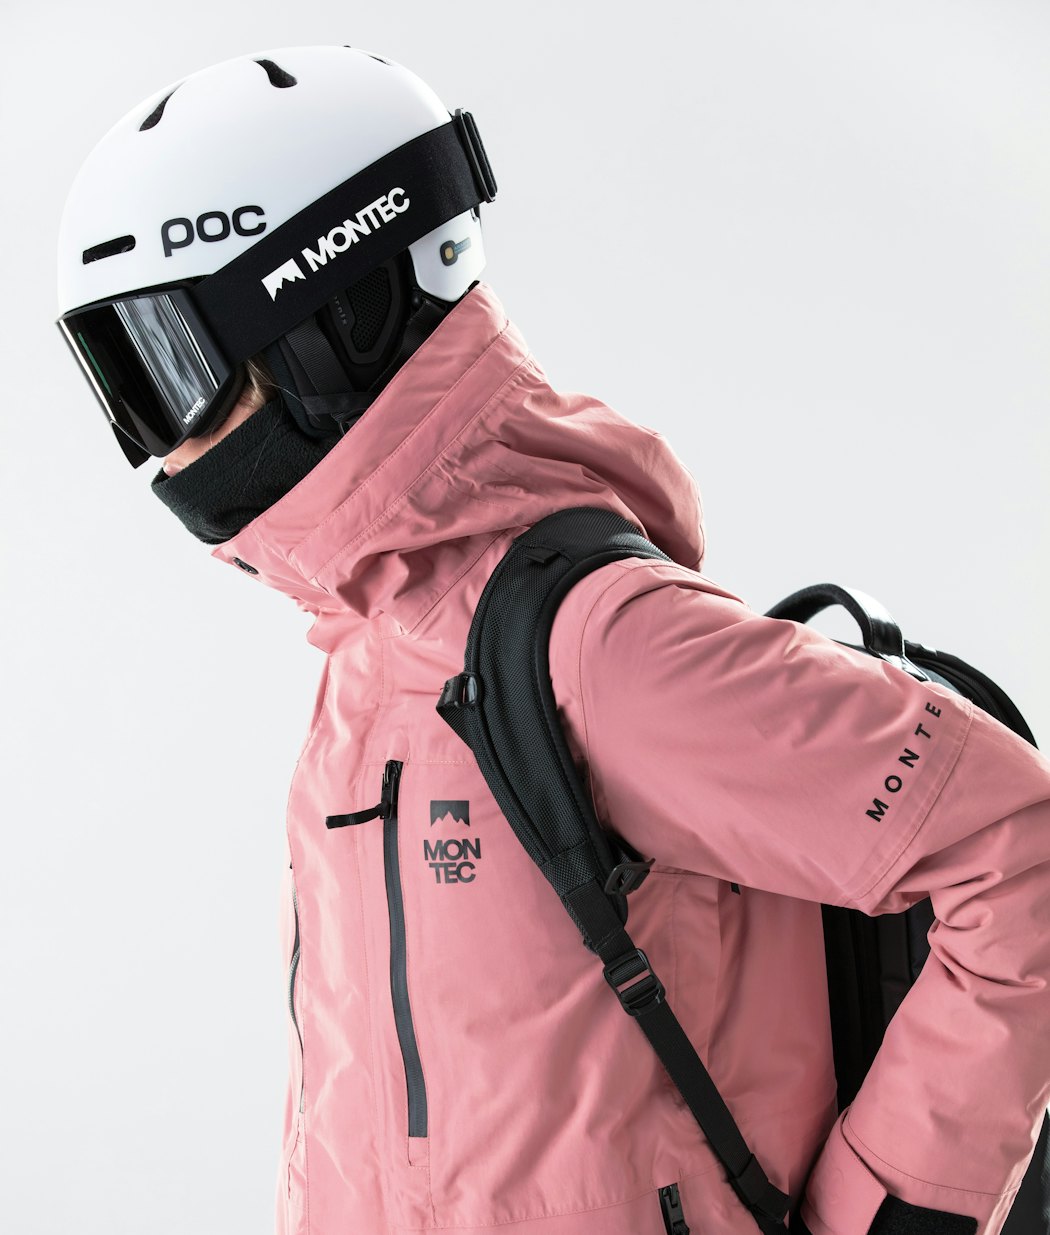 Fawk W 2020 Veste Snowboard Femme Pink